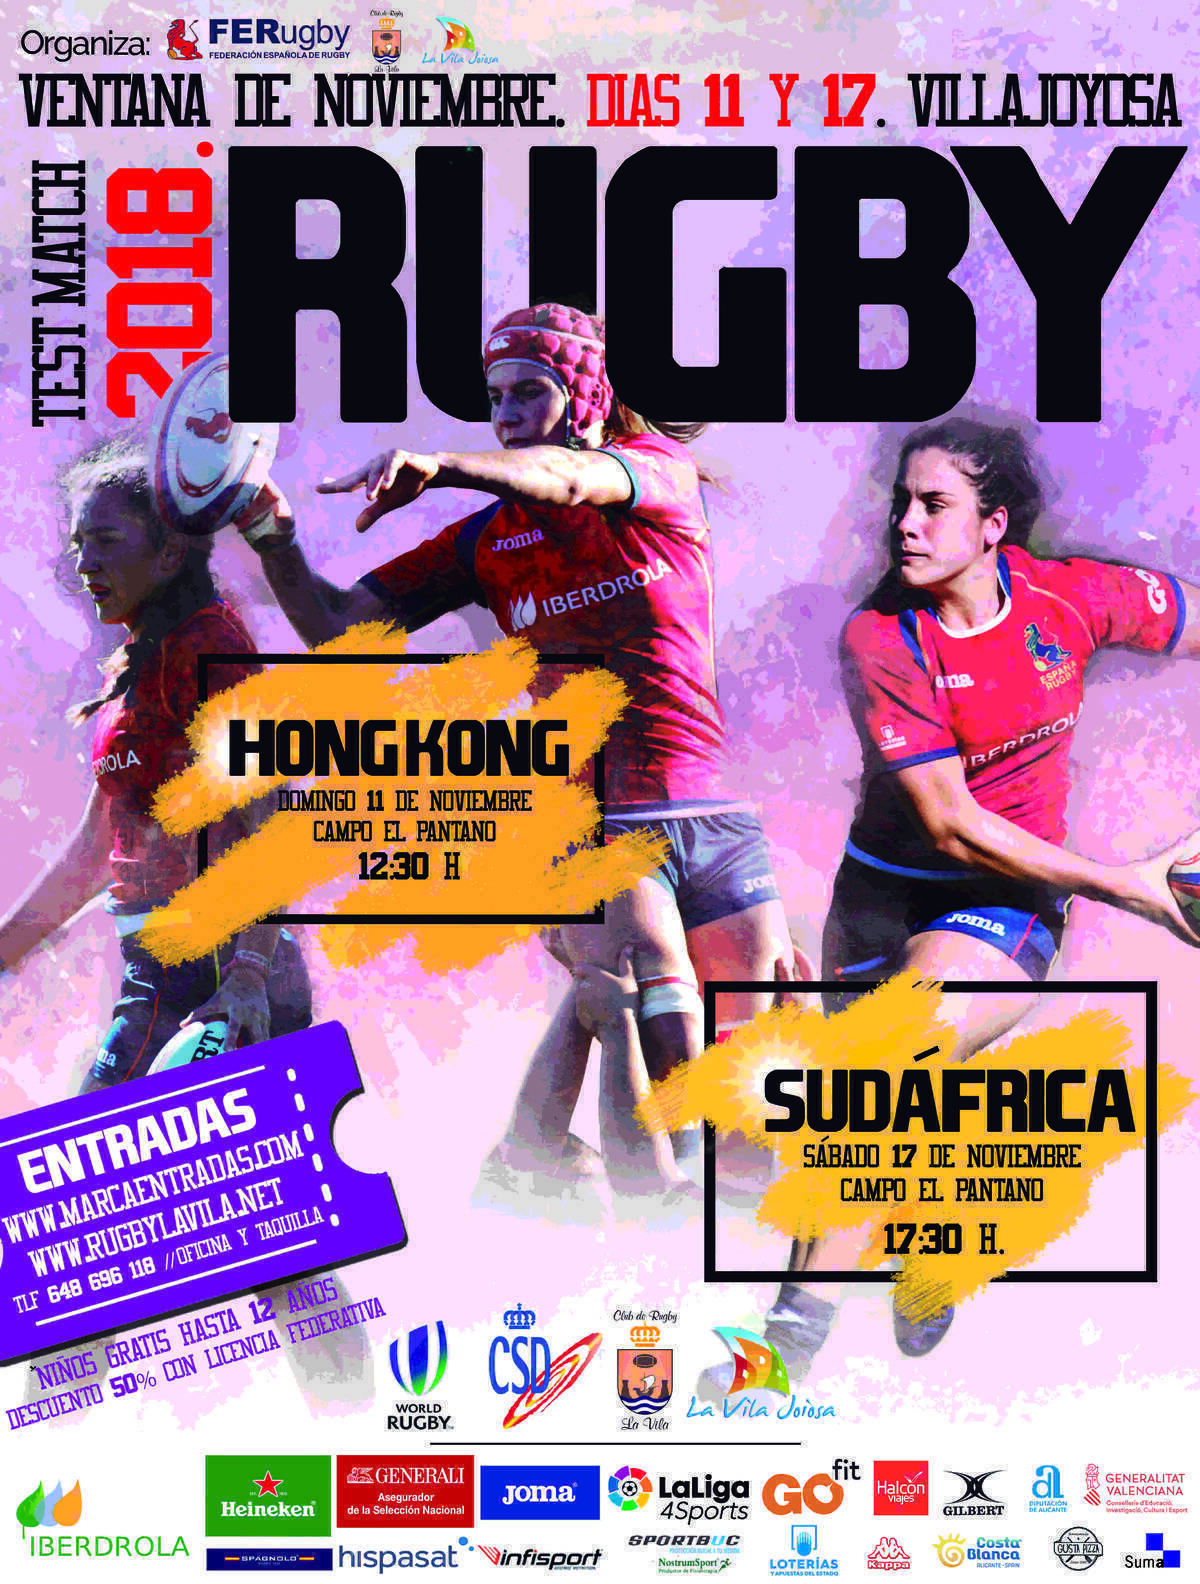 La Vila Joiosa,  epicentro del rugby femenino internacional 